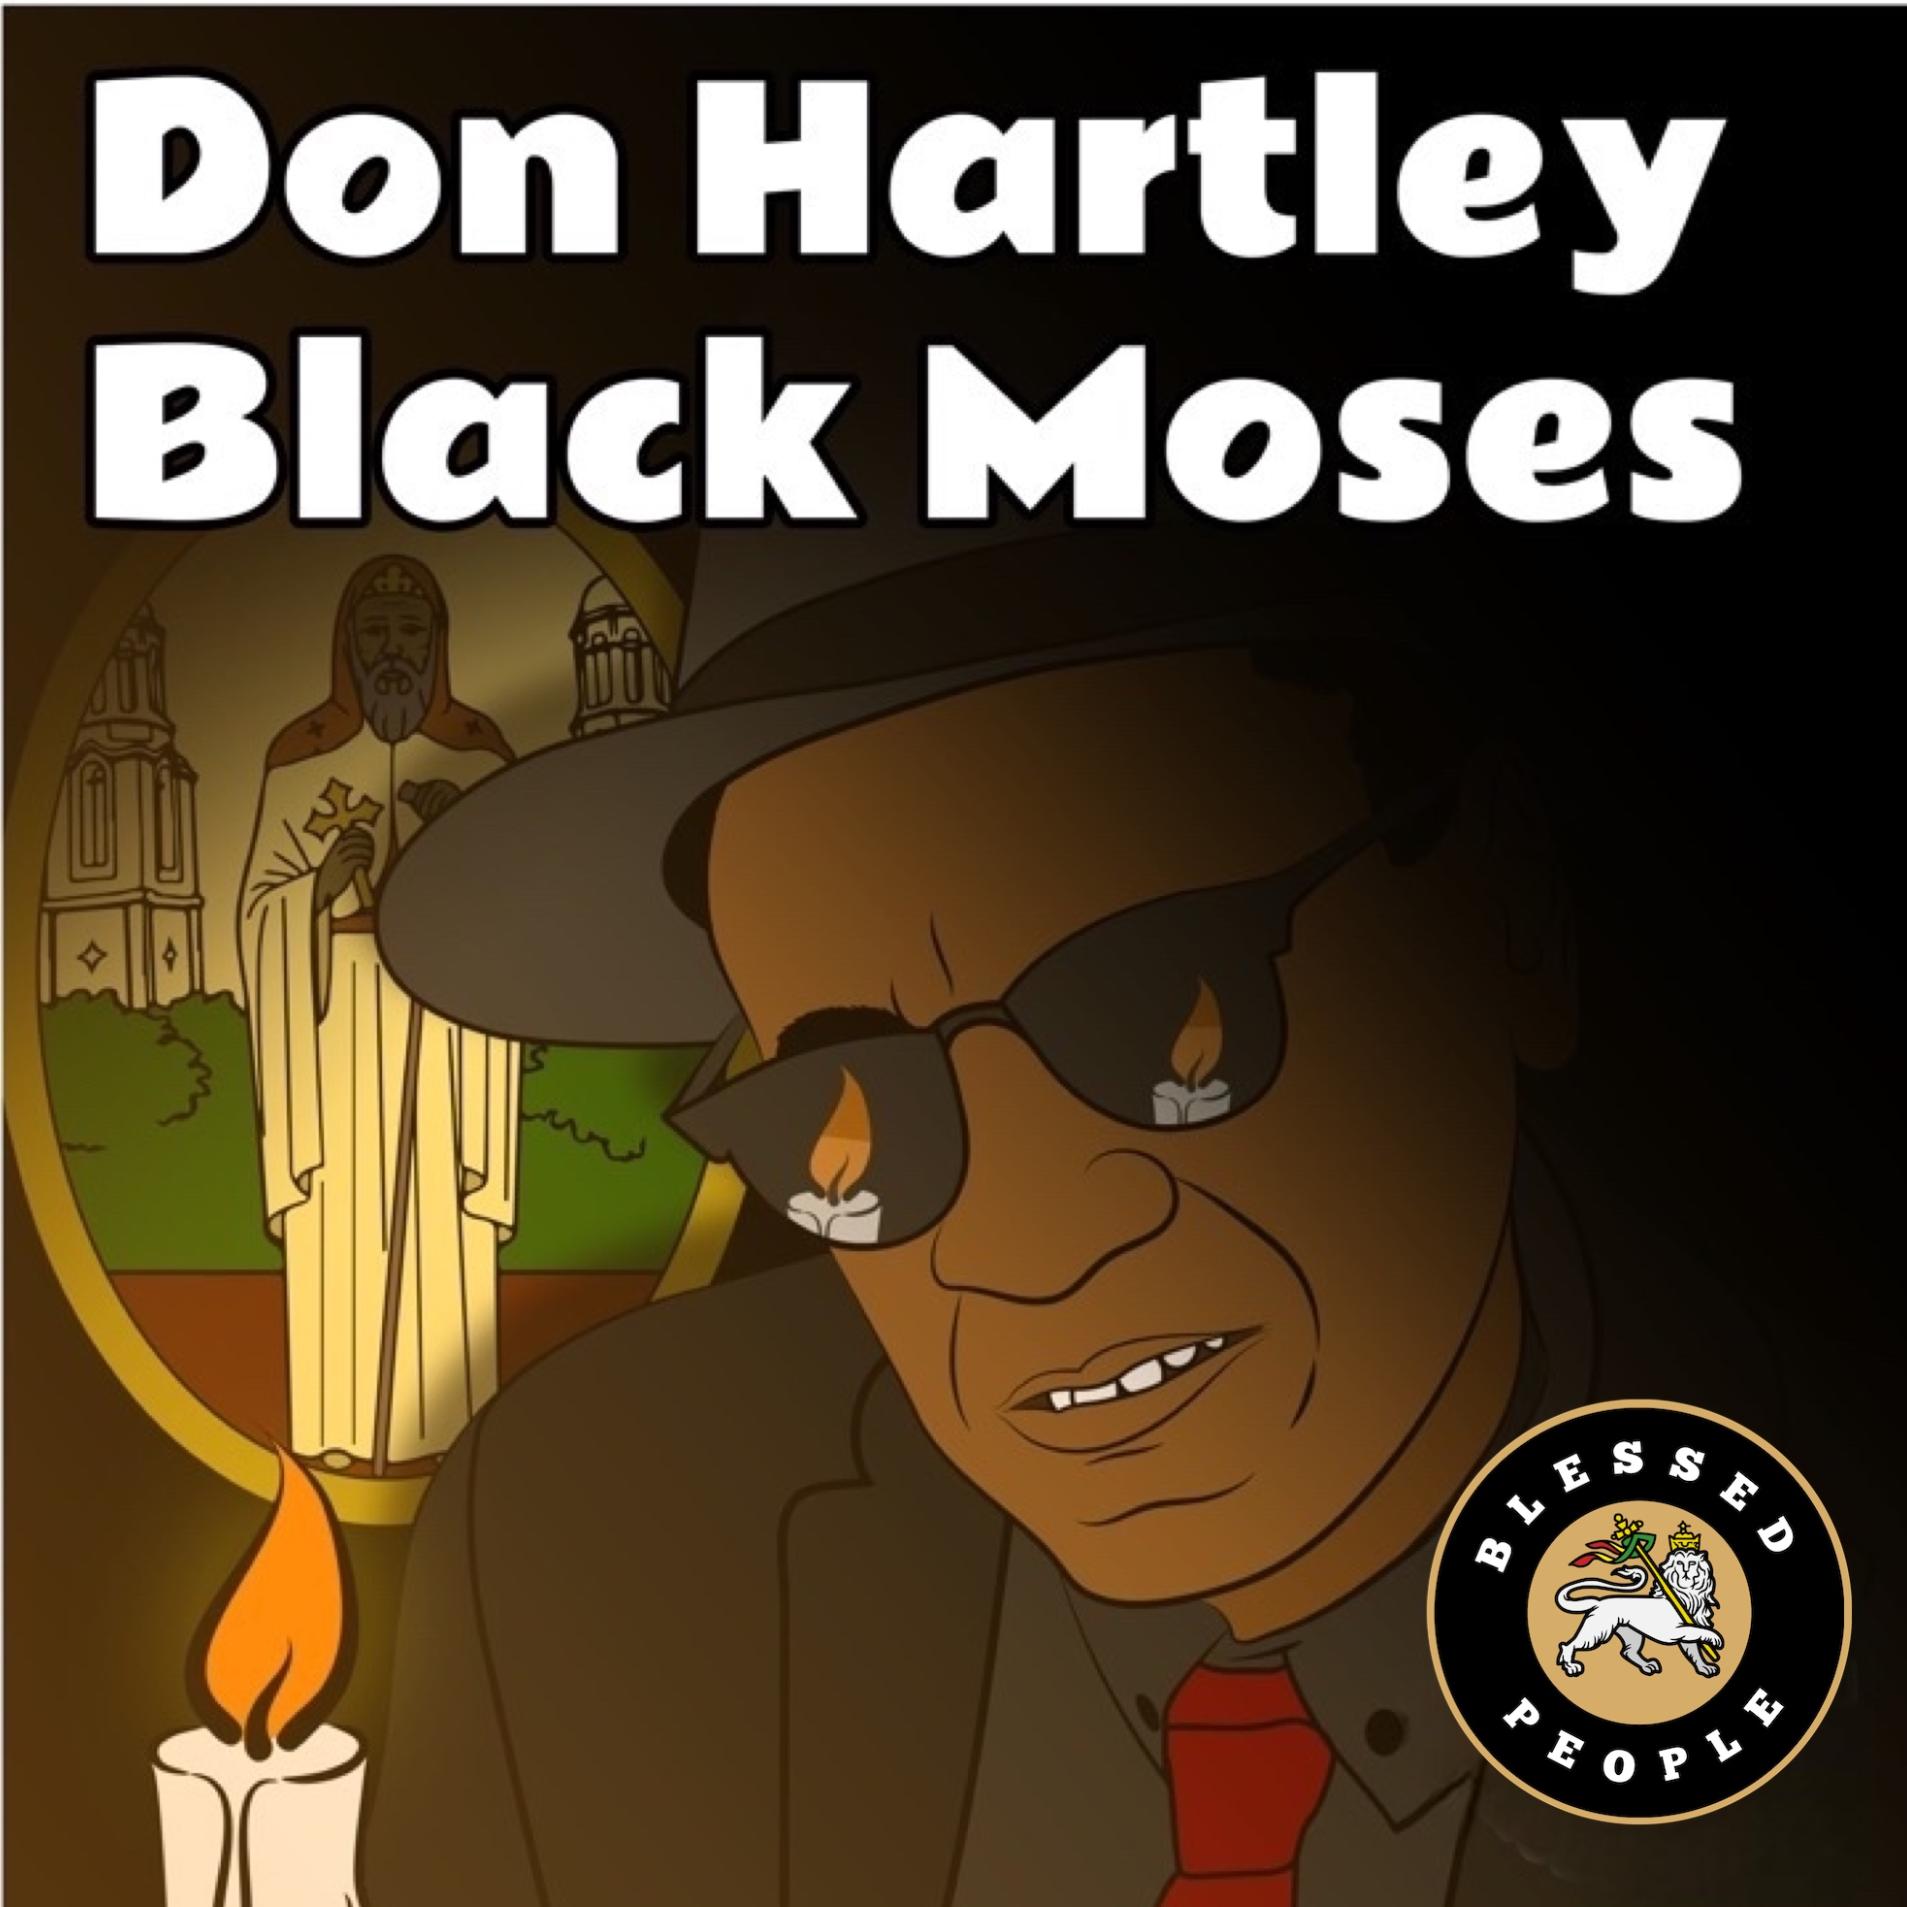 Don Hartley - Black Moses